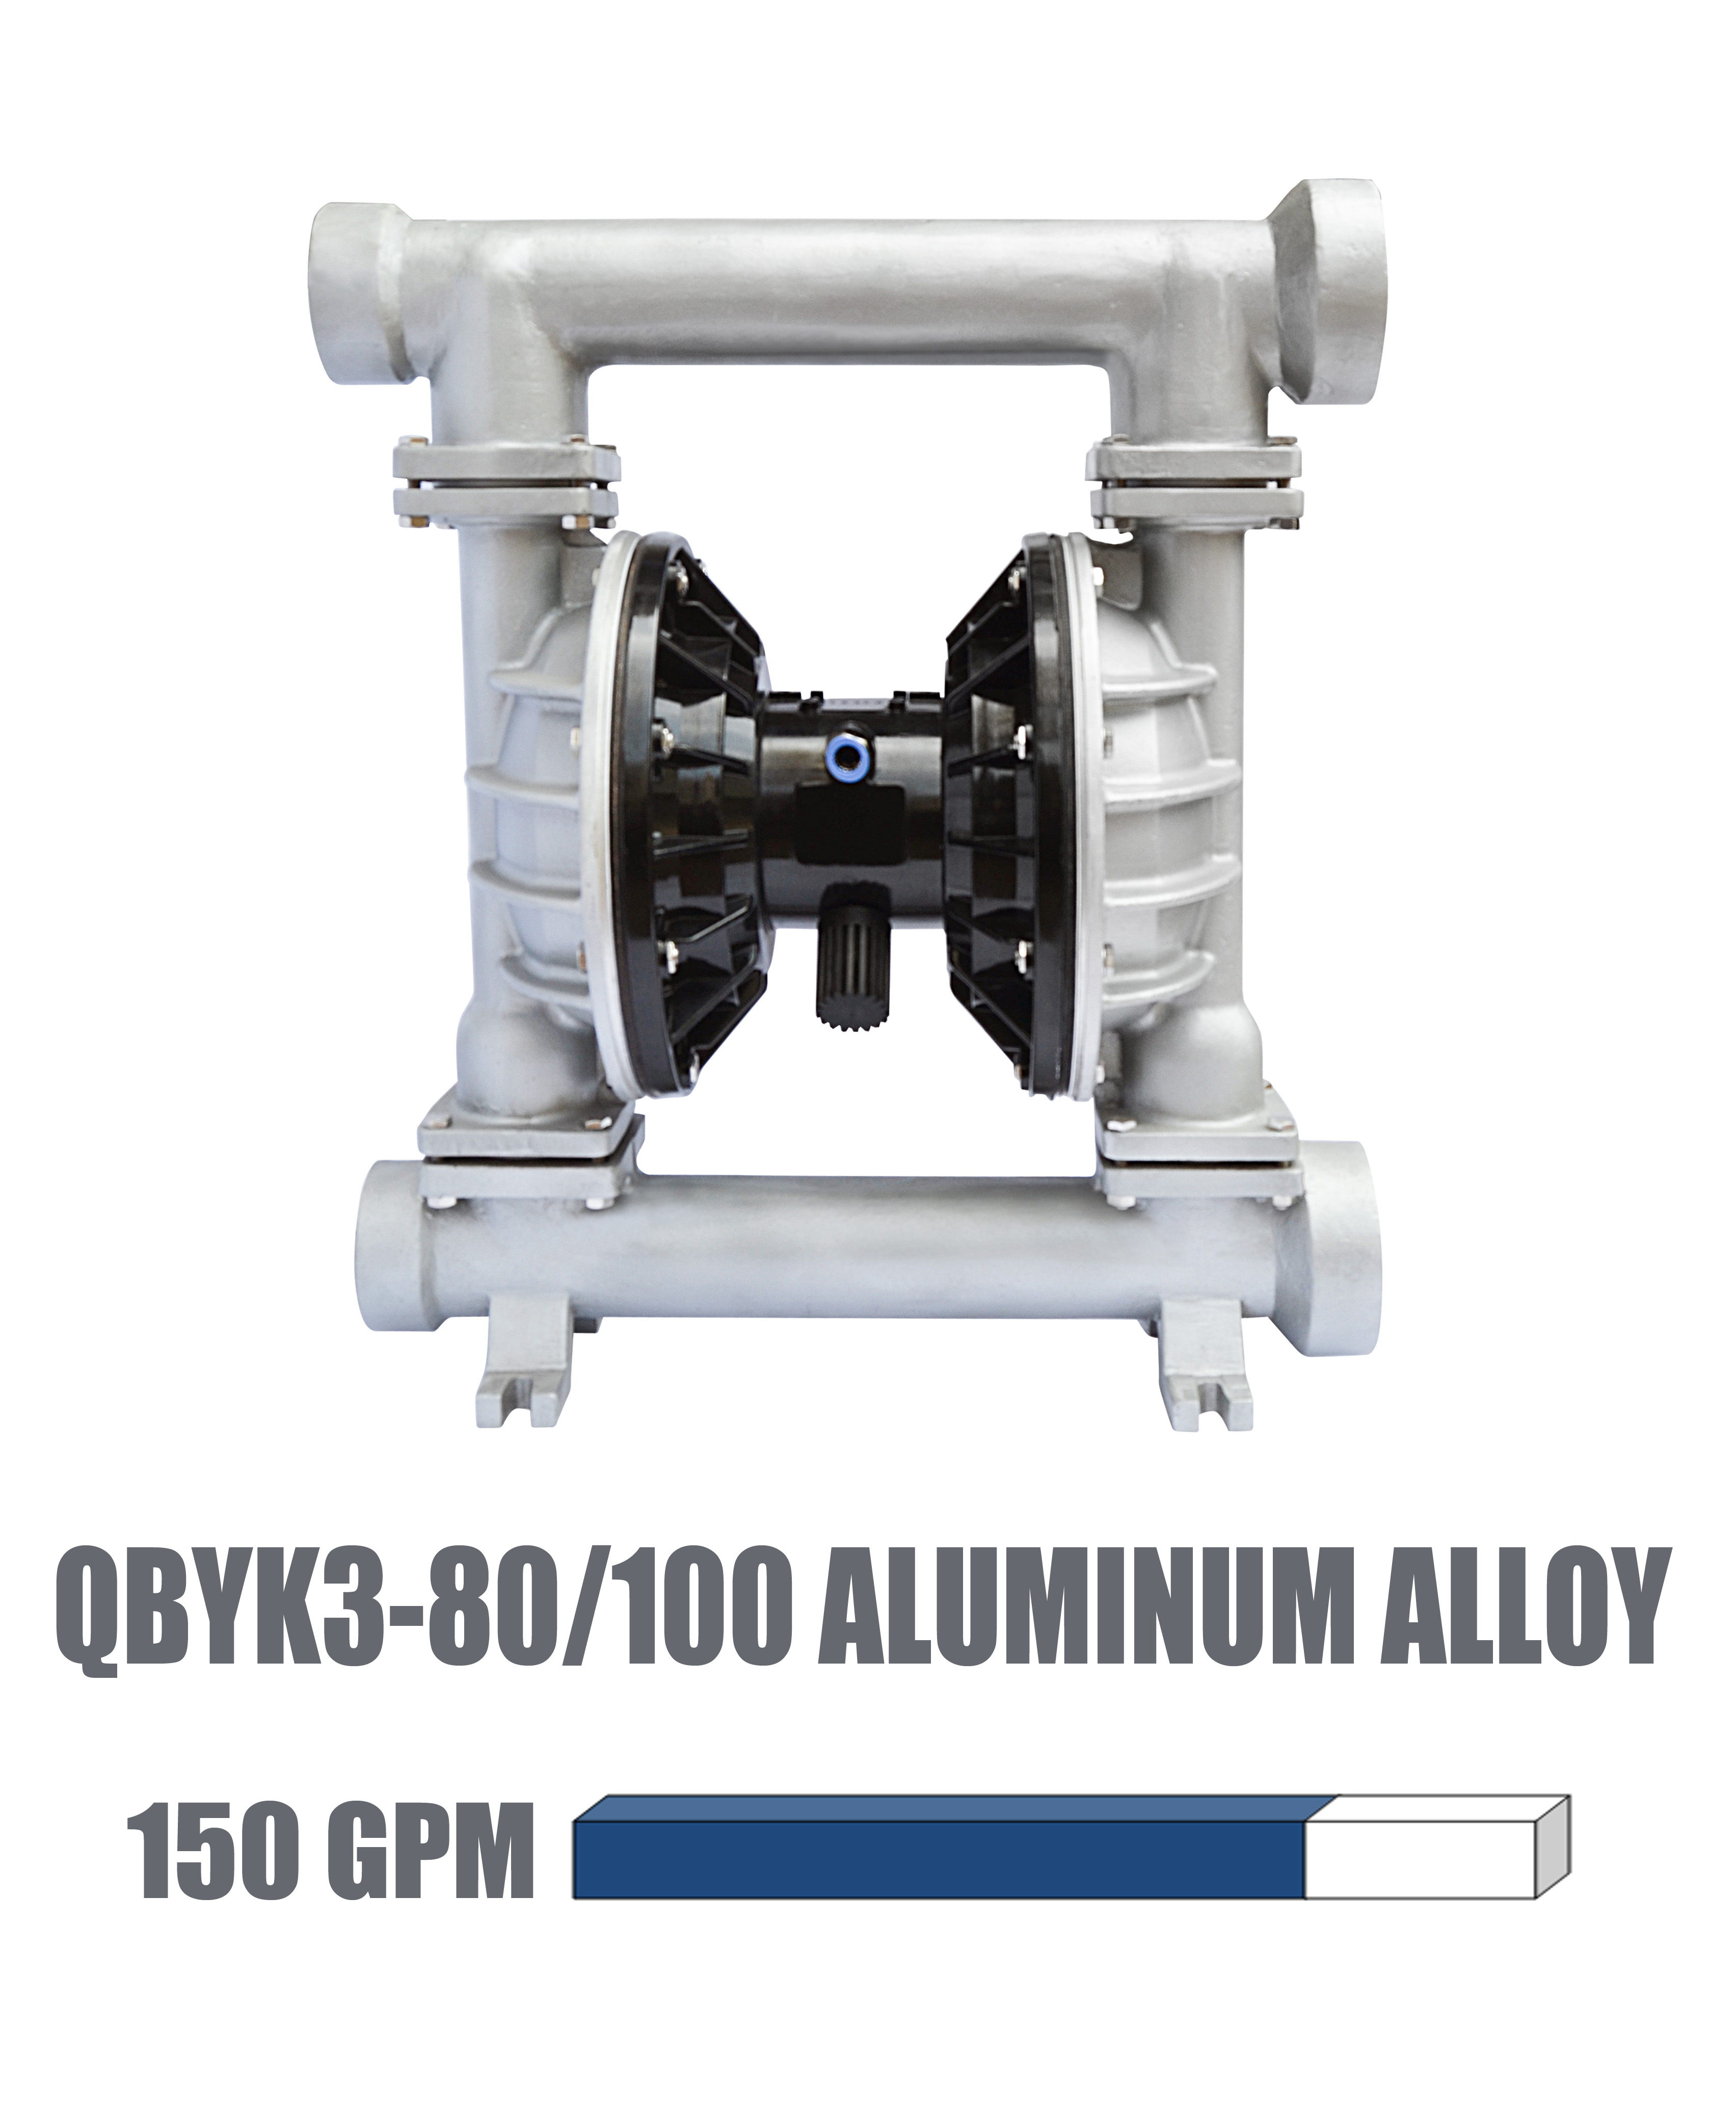 QBYK3-80/100  Aluminum alloy